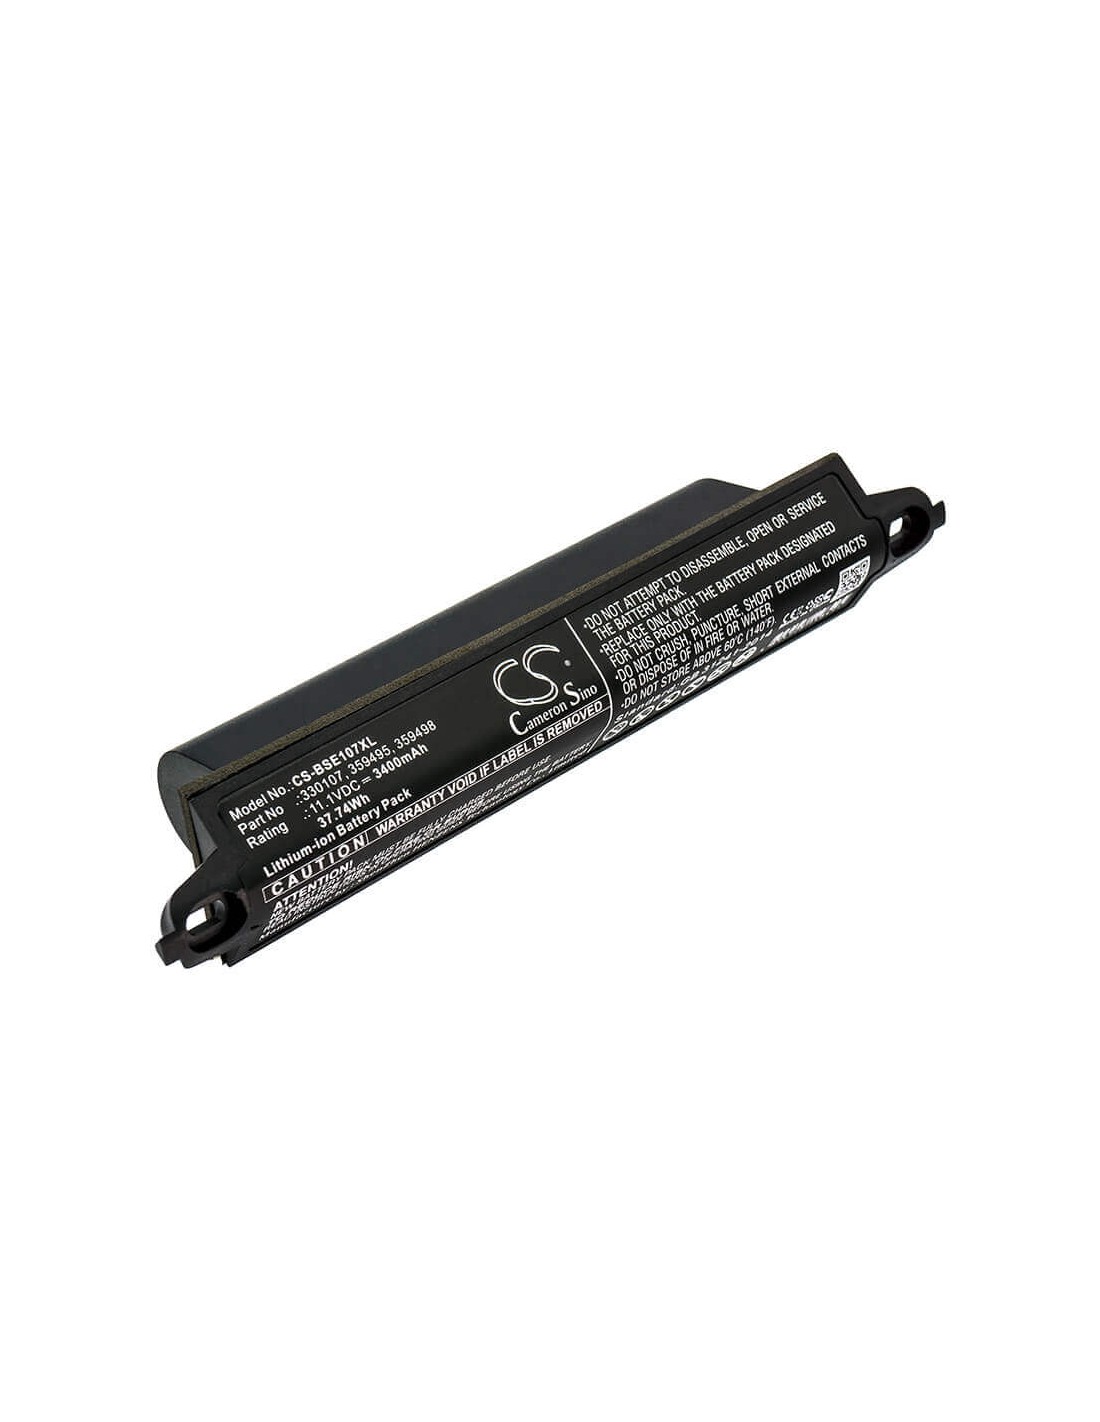 Battery for Bose, 404600, Soundlink, Soundlink 2 11.1V, 3400mAh - 37.74Wh